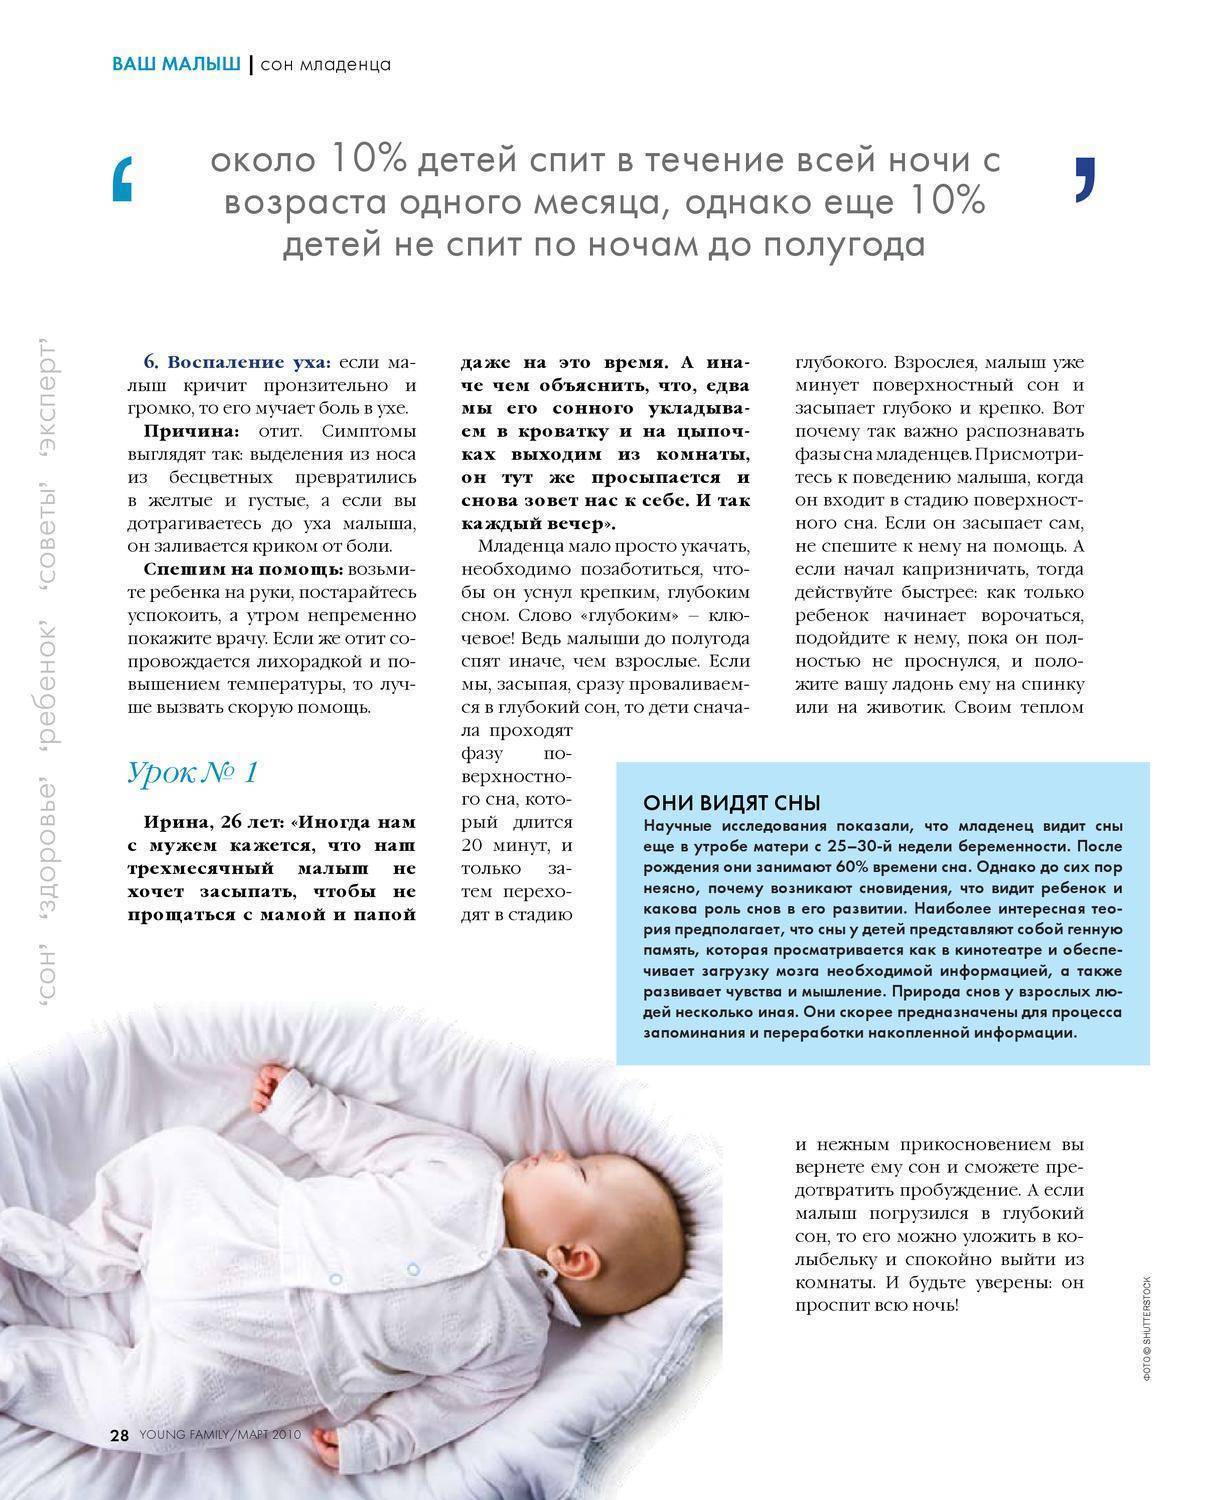 Как долго спит новорожденный в первый месяц: Секреты здорового сна малыша